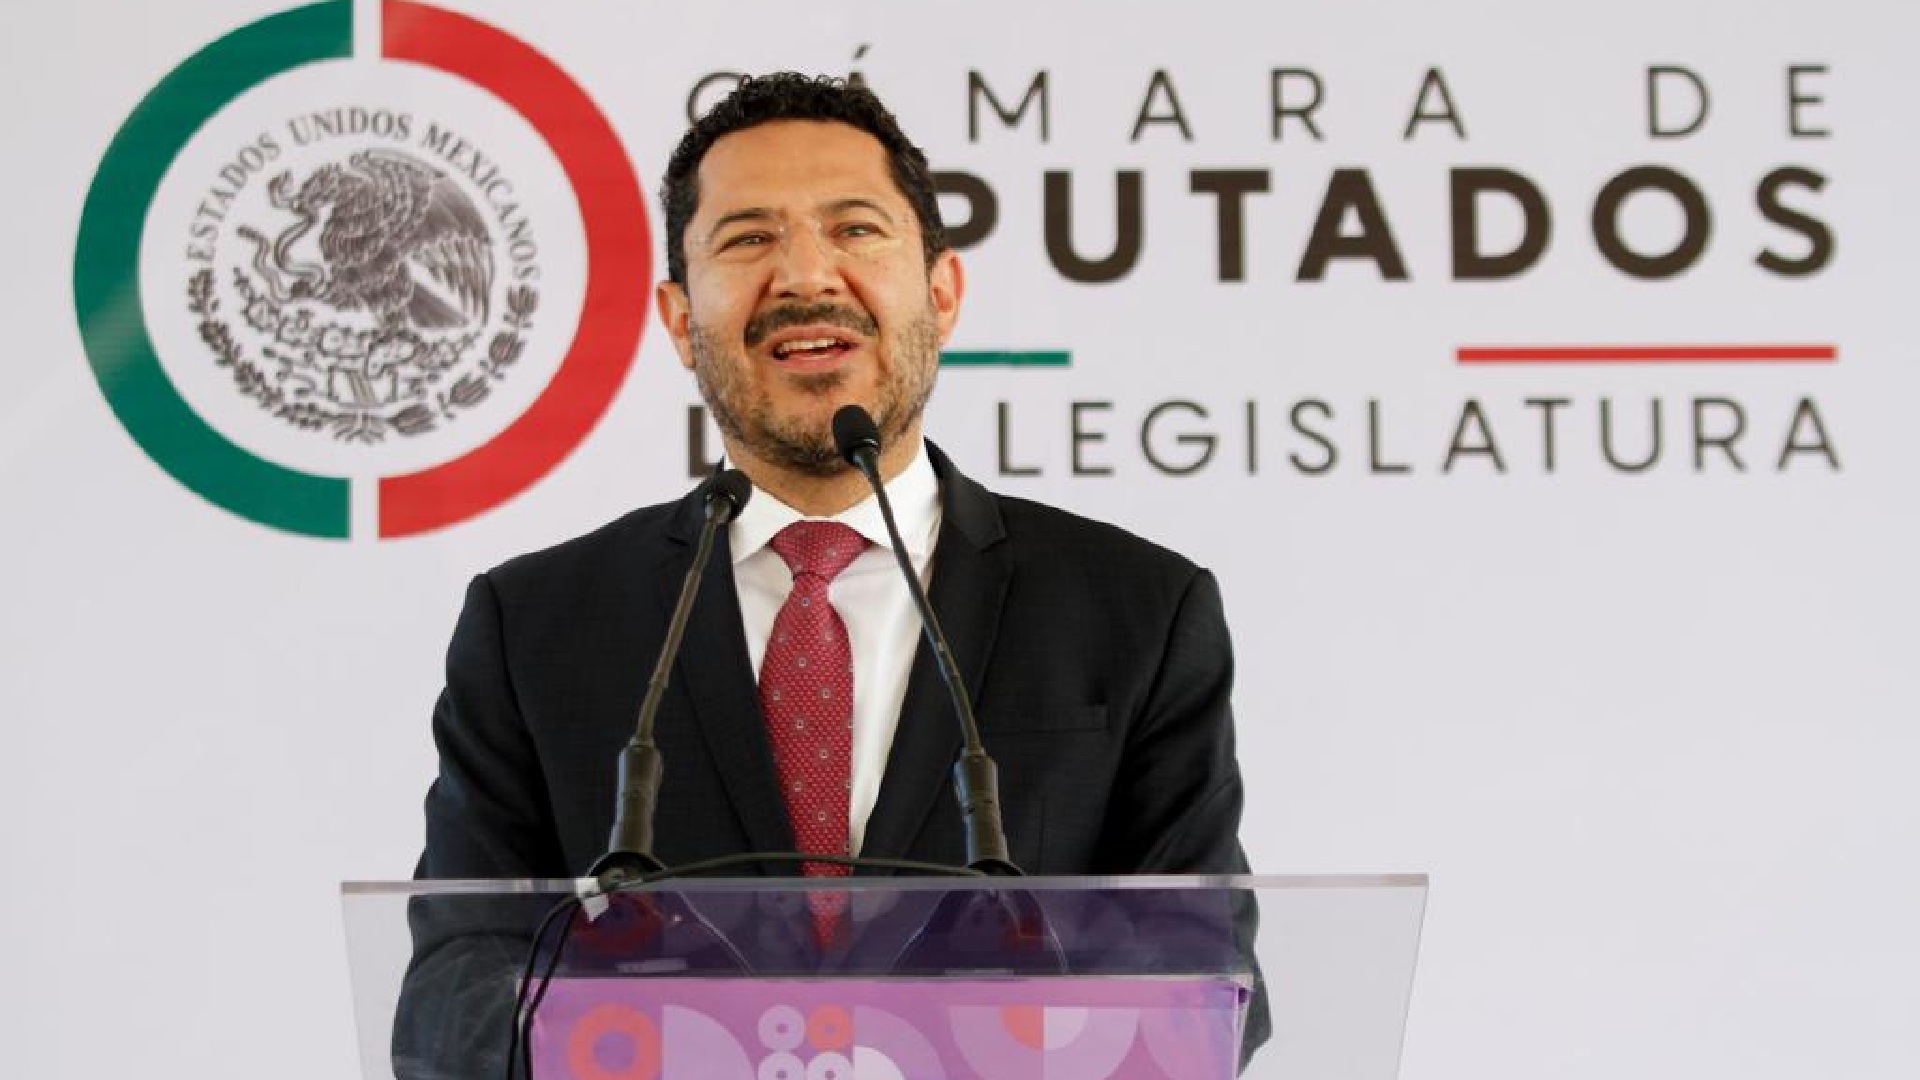 Martí Batres, Head of the CDMX Interior Secretariat (Photo: Twitter/martibatres)